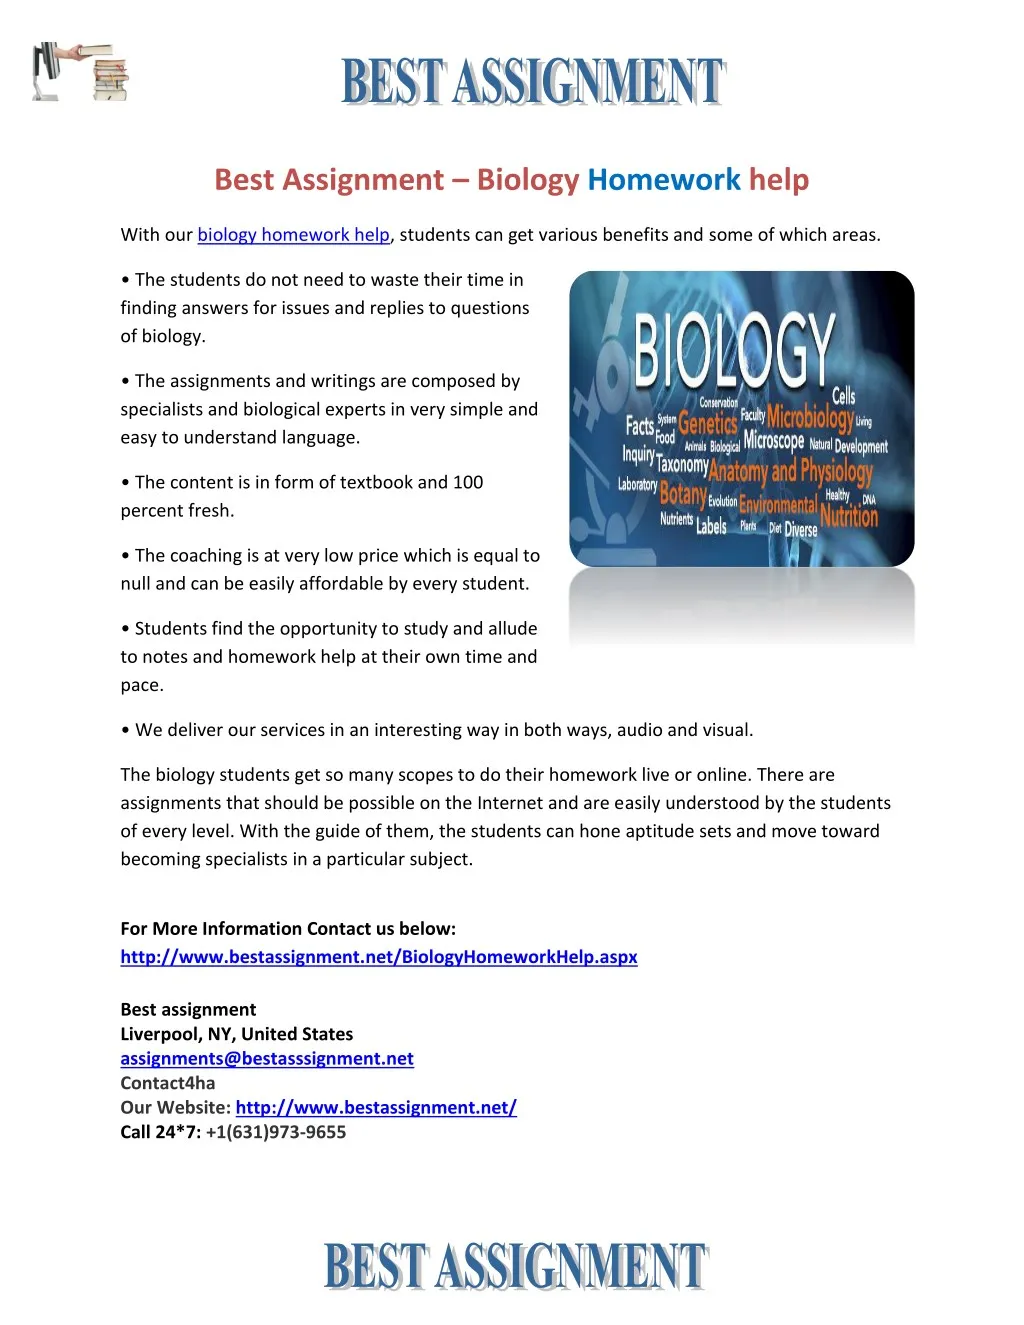 best assignment biology homework help